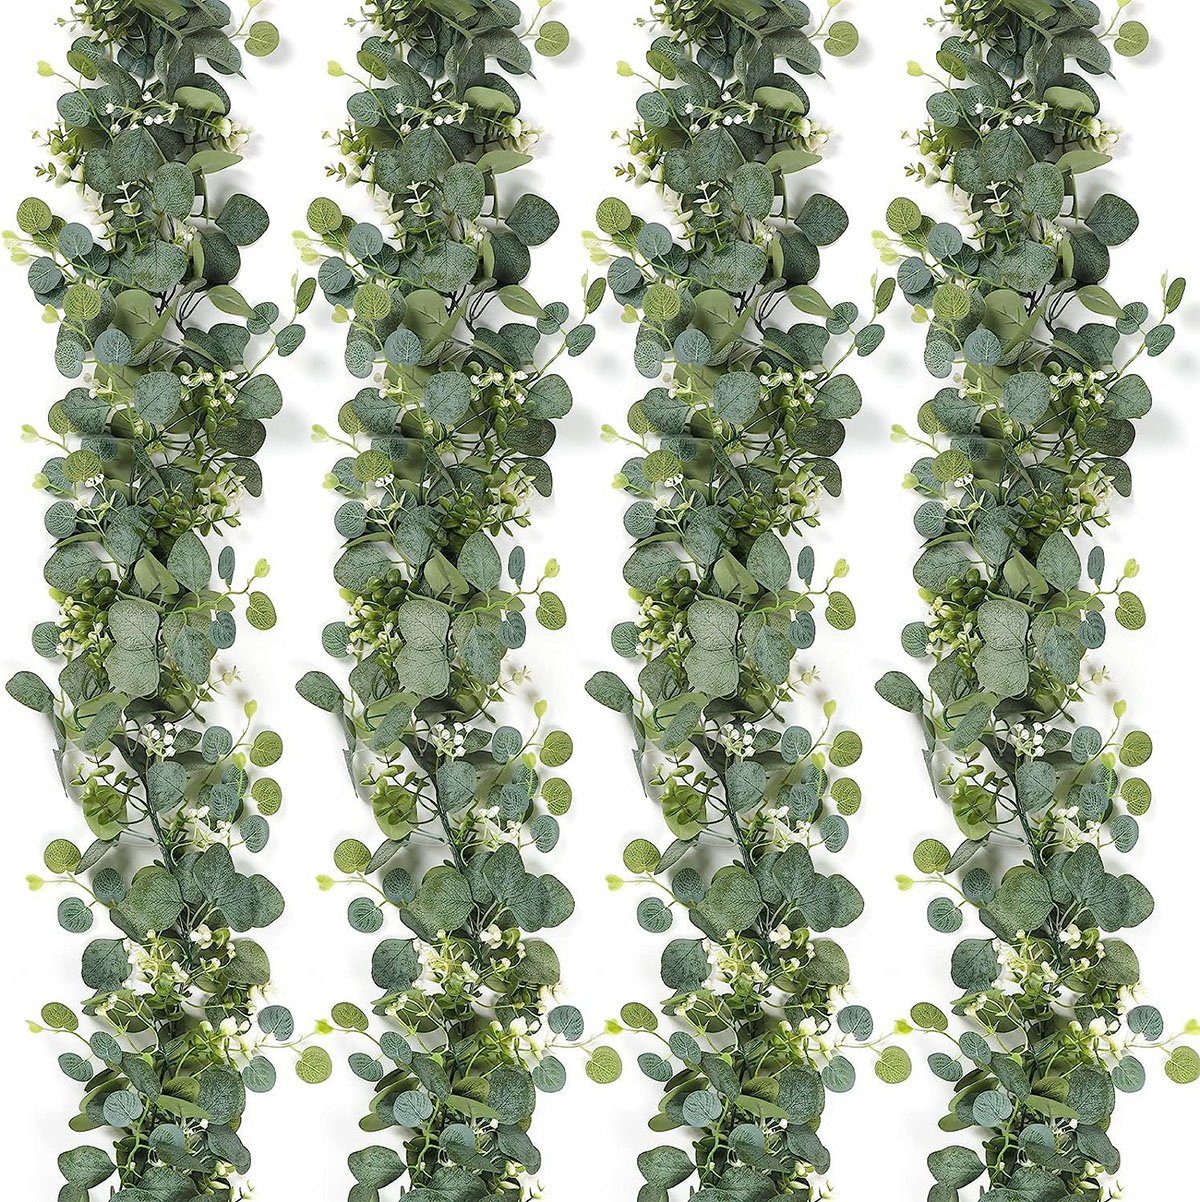 Kunstranke 4 Pflanzen Weidenblätter, Eukalyptus Stück Künstliche CTGtree Girlande